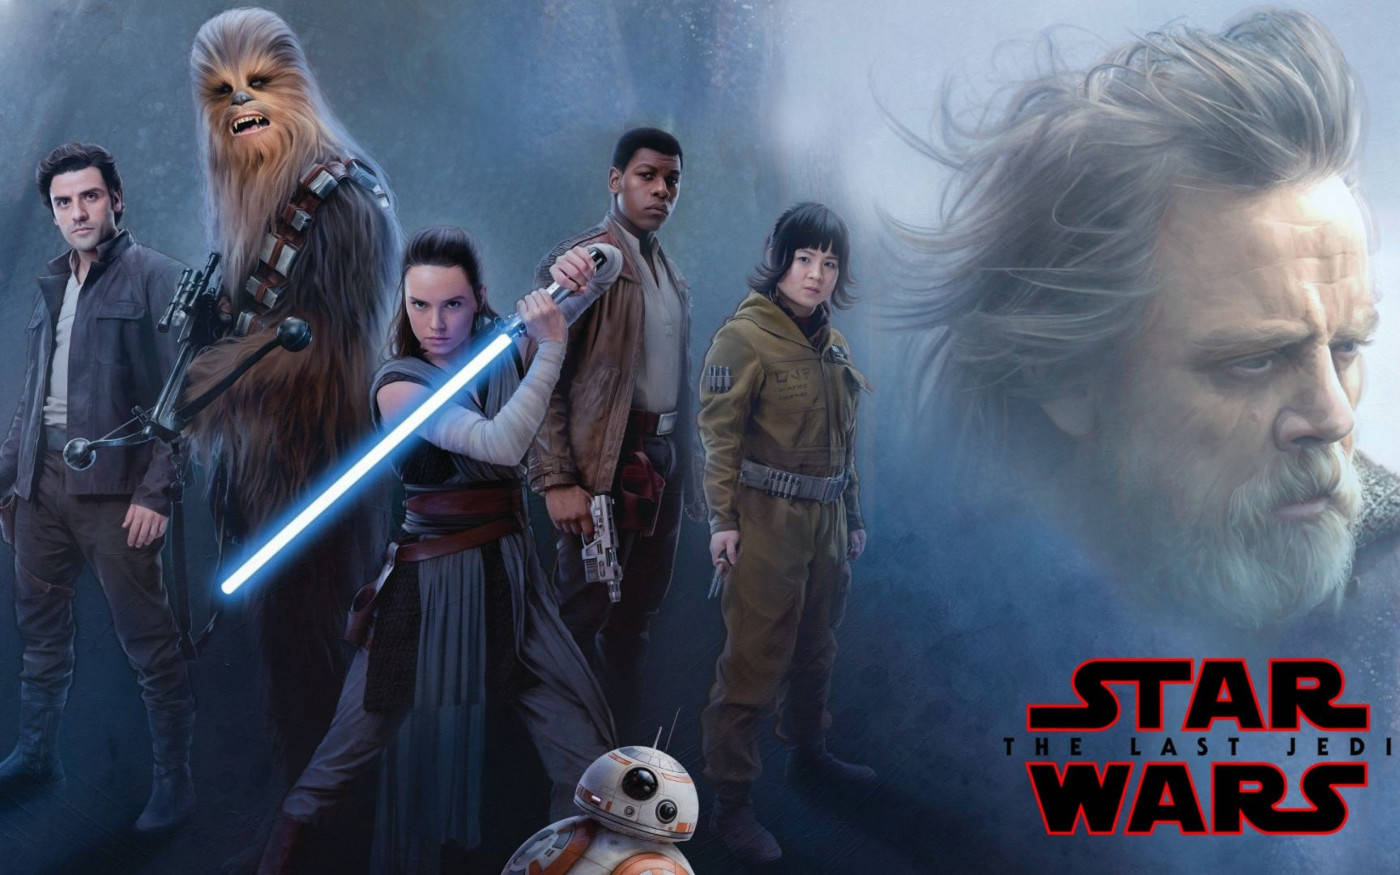 Star Wars Luke Skywalker 4k 2017 Film Poster Wallpaper